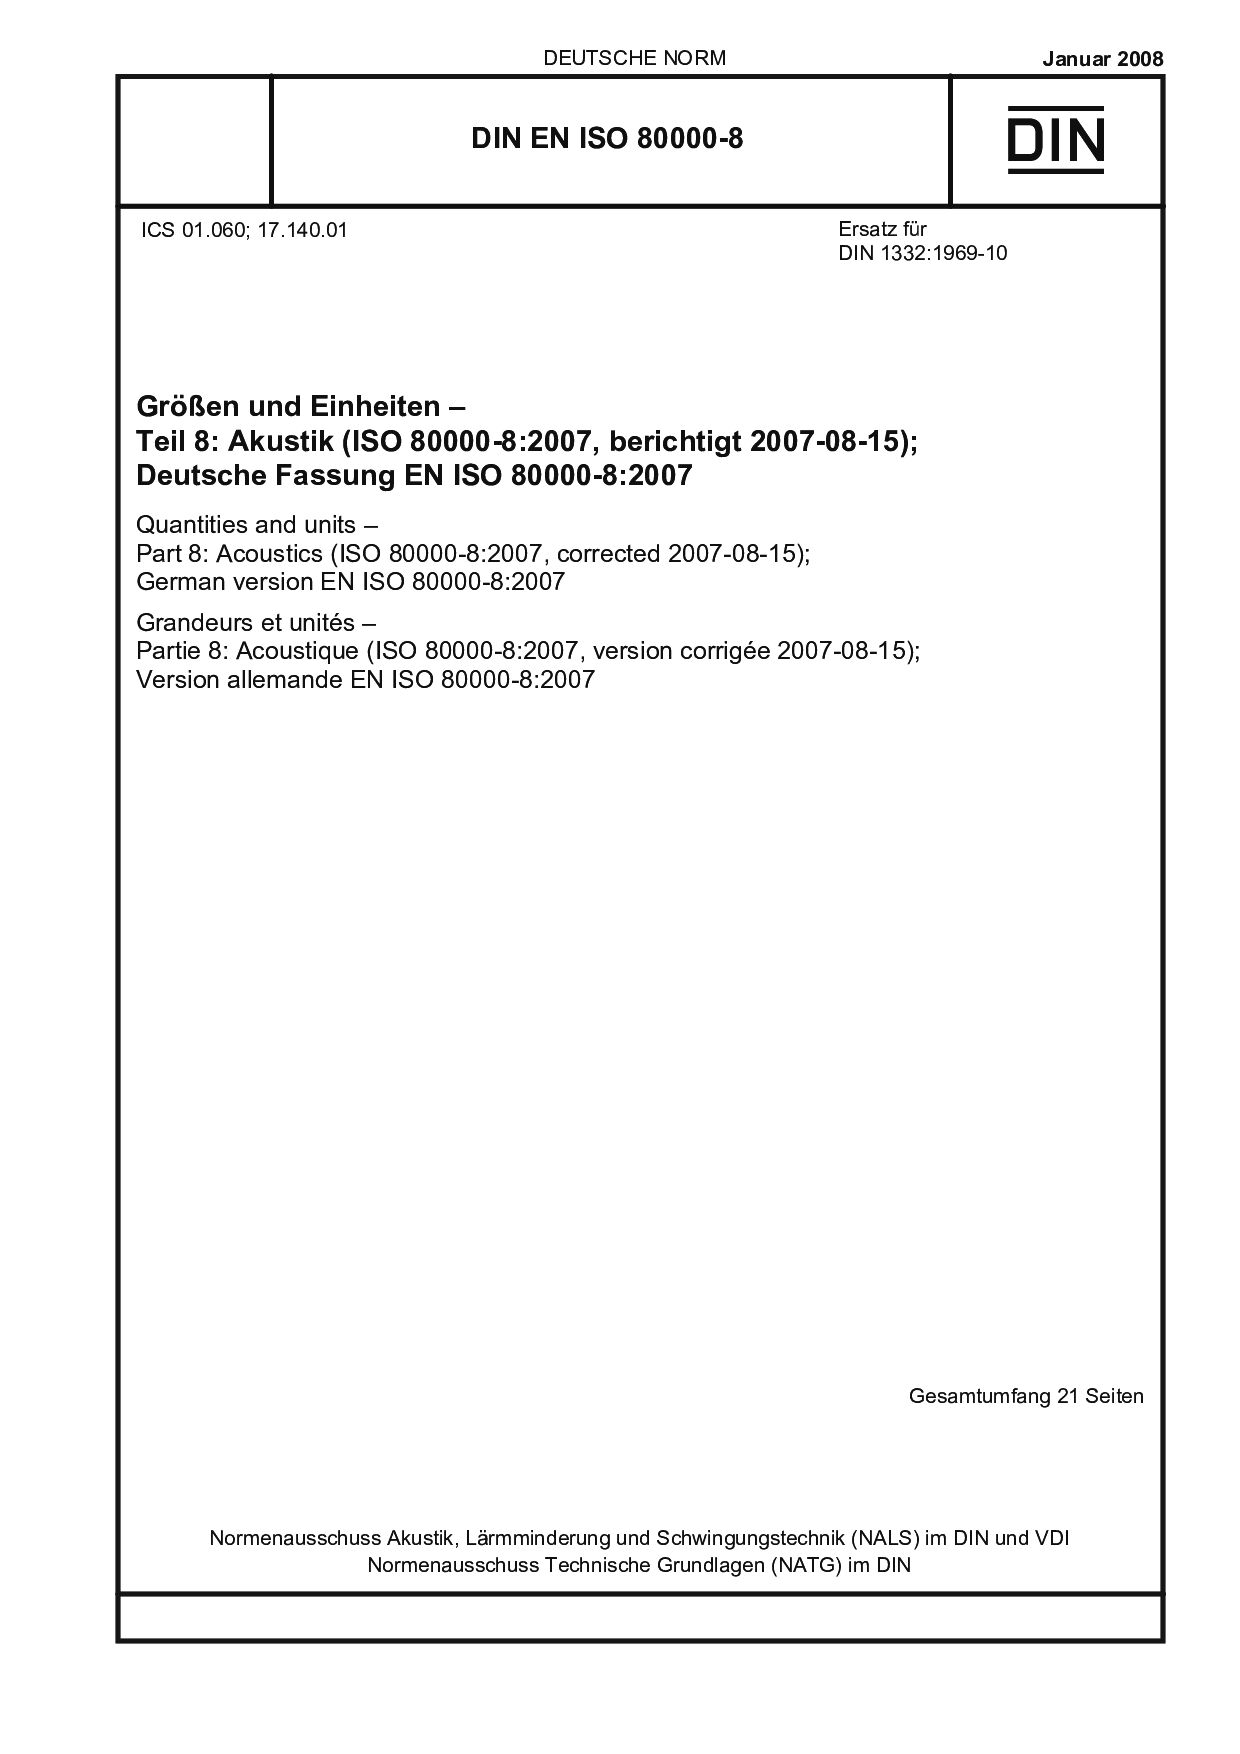 DIN EN ISO 80000-8:2008封面图